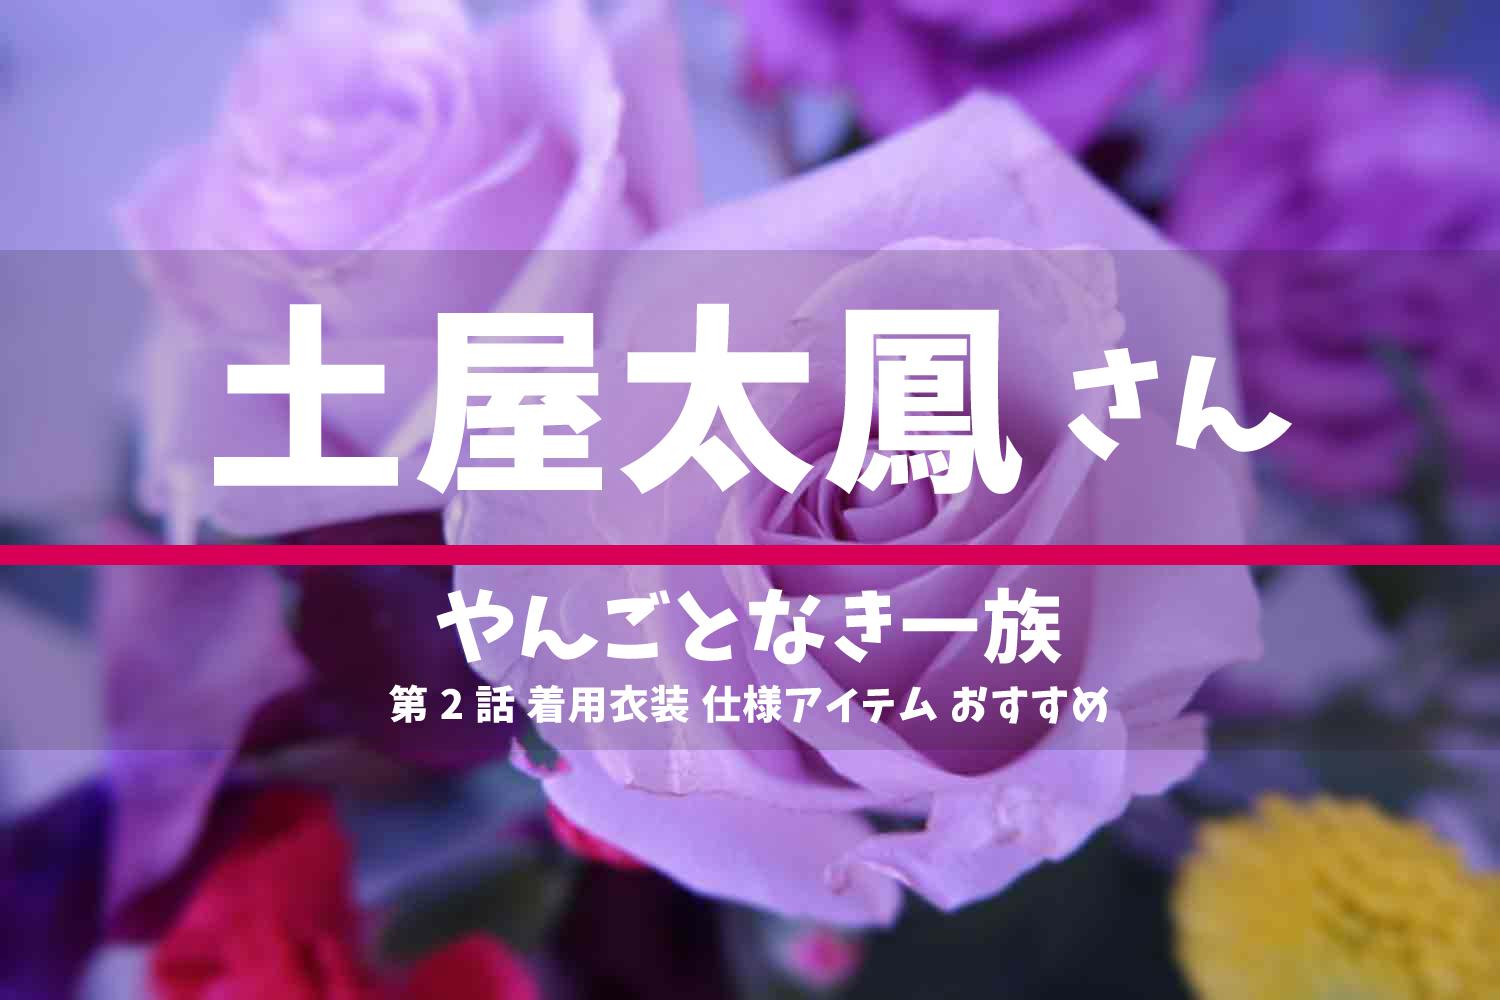 やんごとなき一族 土屋太鳳さん ドラマ 衣装 2022年4月28日放送